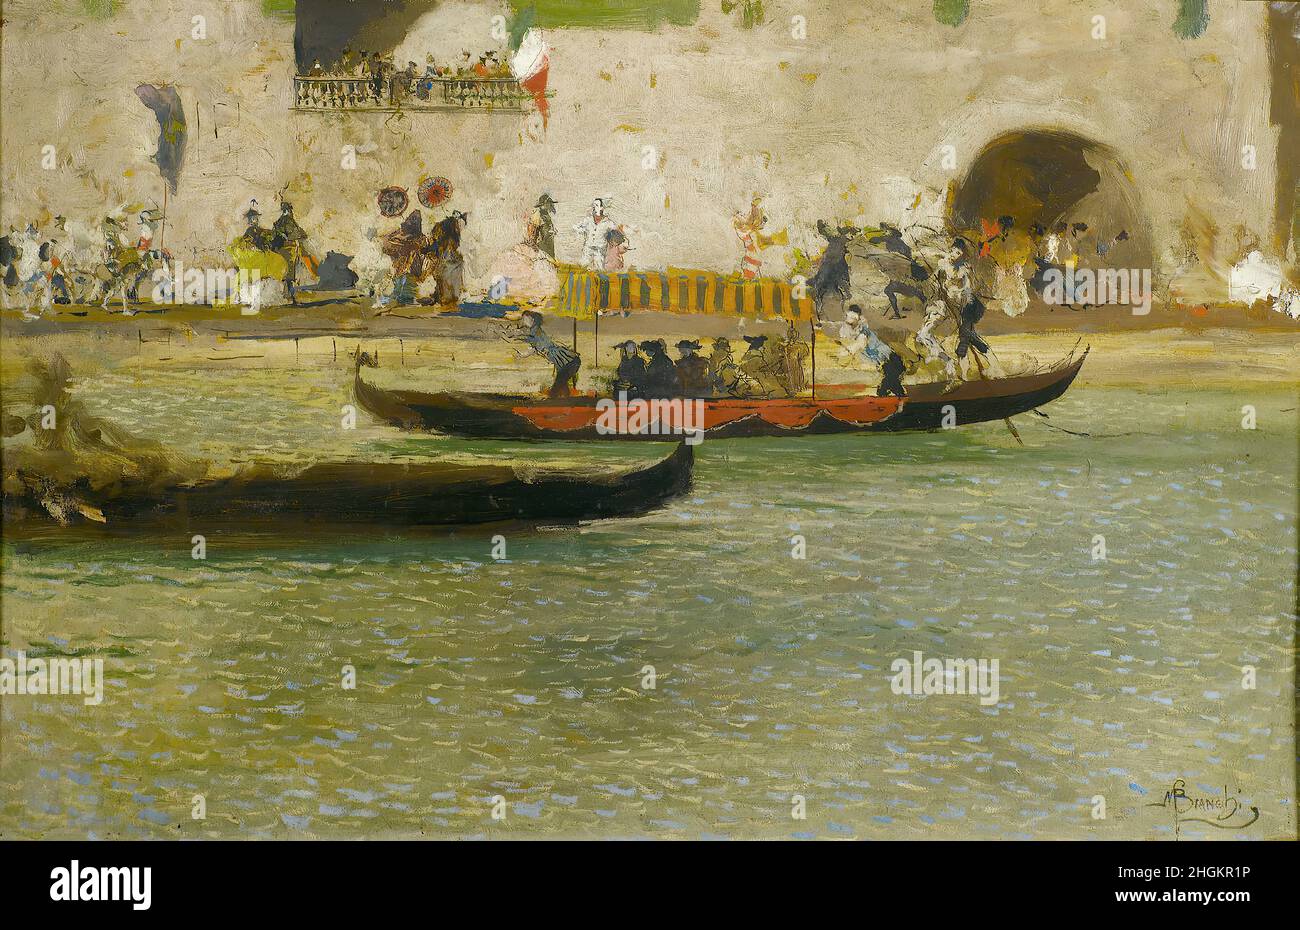 Carnevale a Chioggia - 1890 - olio su compensato 49,5 x 75,7 cm - Bianchi Mosè Stock Photo